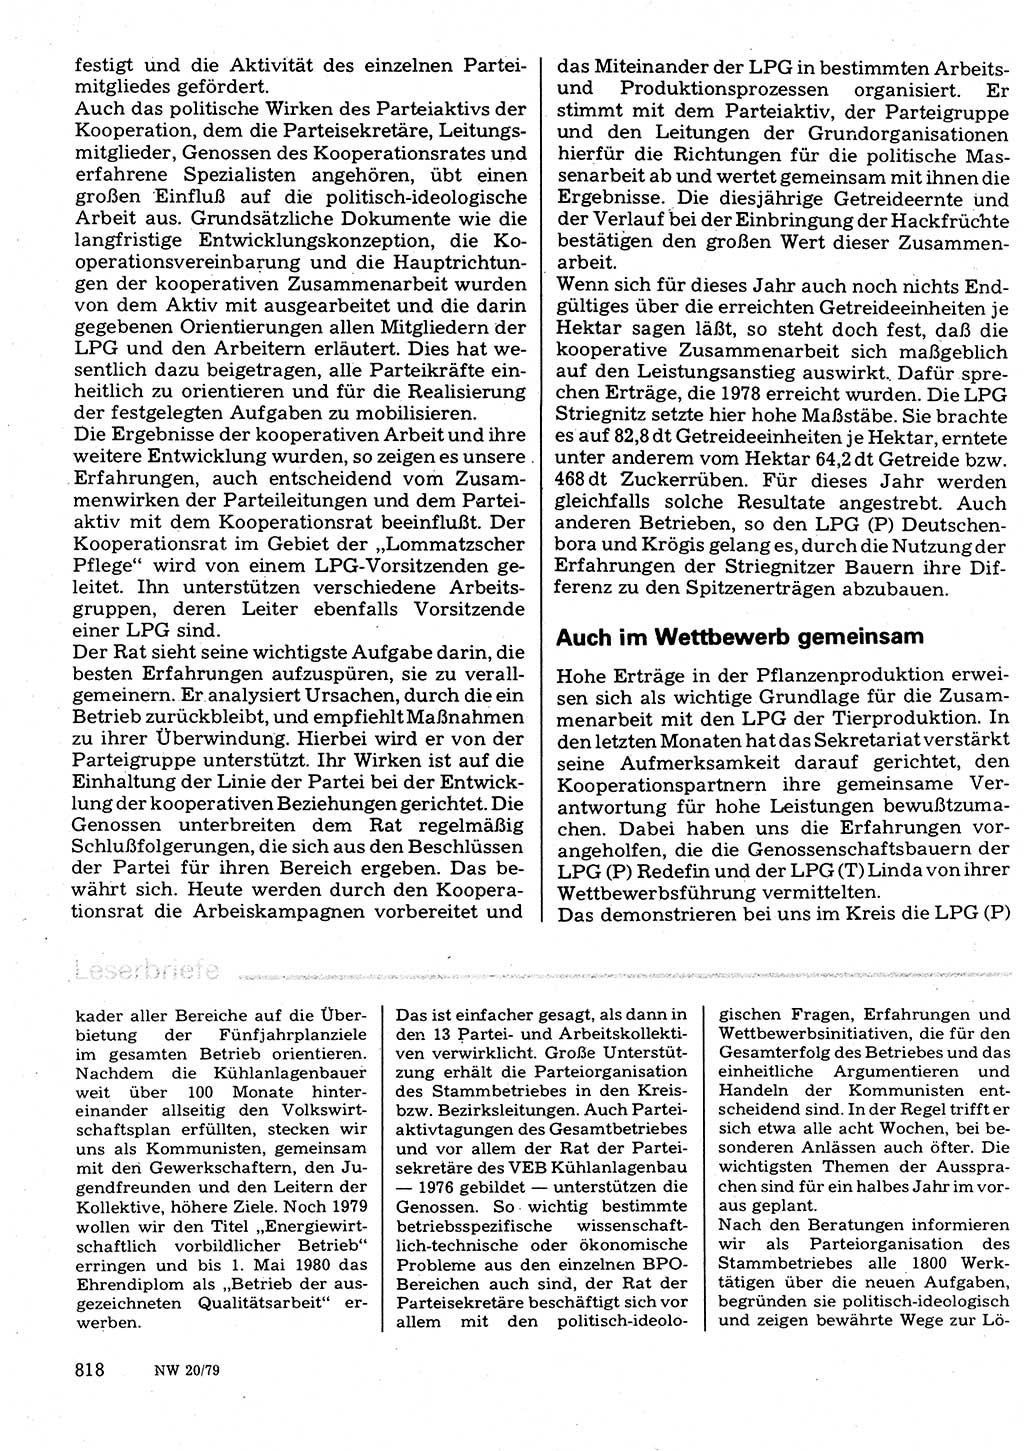 Neuer Weg (NW), Organ des Zentralkomitees (ZK) der SED (Sozialistische Einheitspartei Deutschlands) für Fragen des Parteilebens, 34. Jahrgang [Deutsche Demokratische Republik (DDR)] 1979, Seite 818 (NW ZK SED DDR 1979, S. 818)